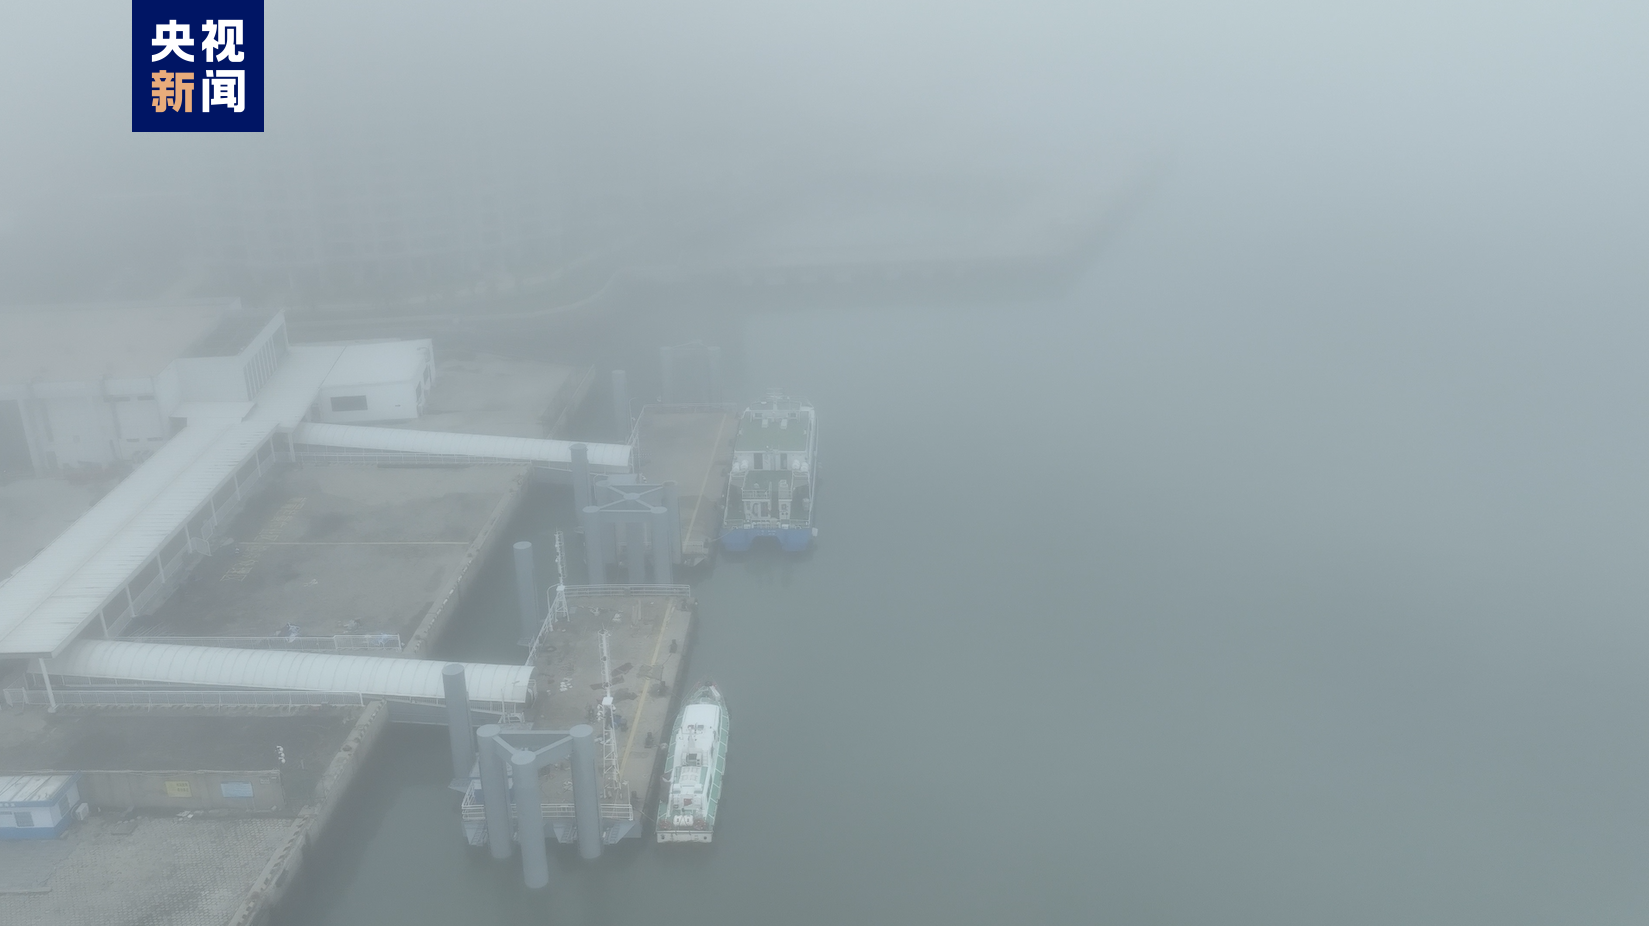 福建沿海大雾 3条“小三通”客运航线暂时停航